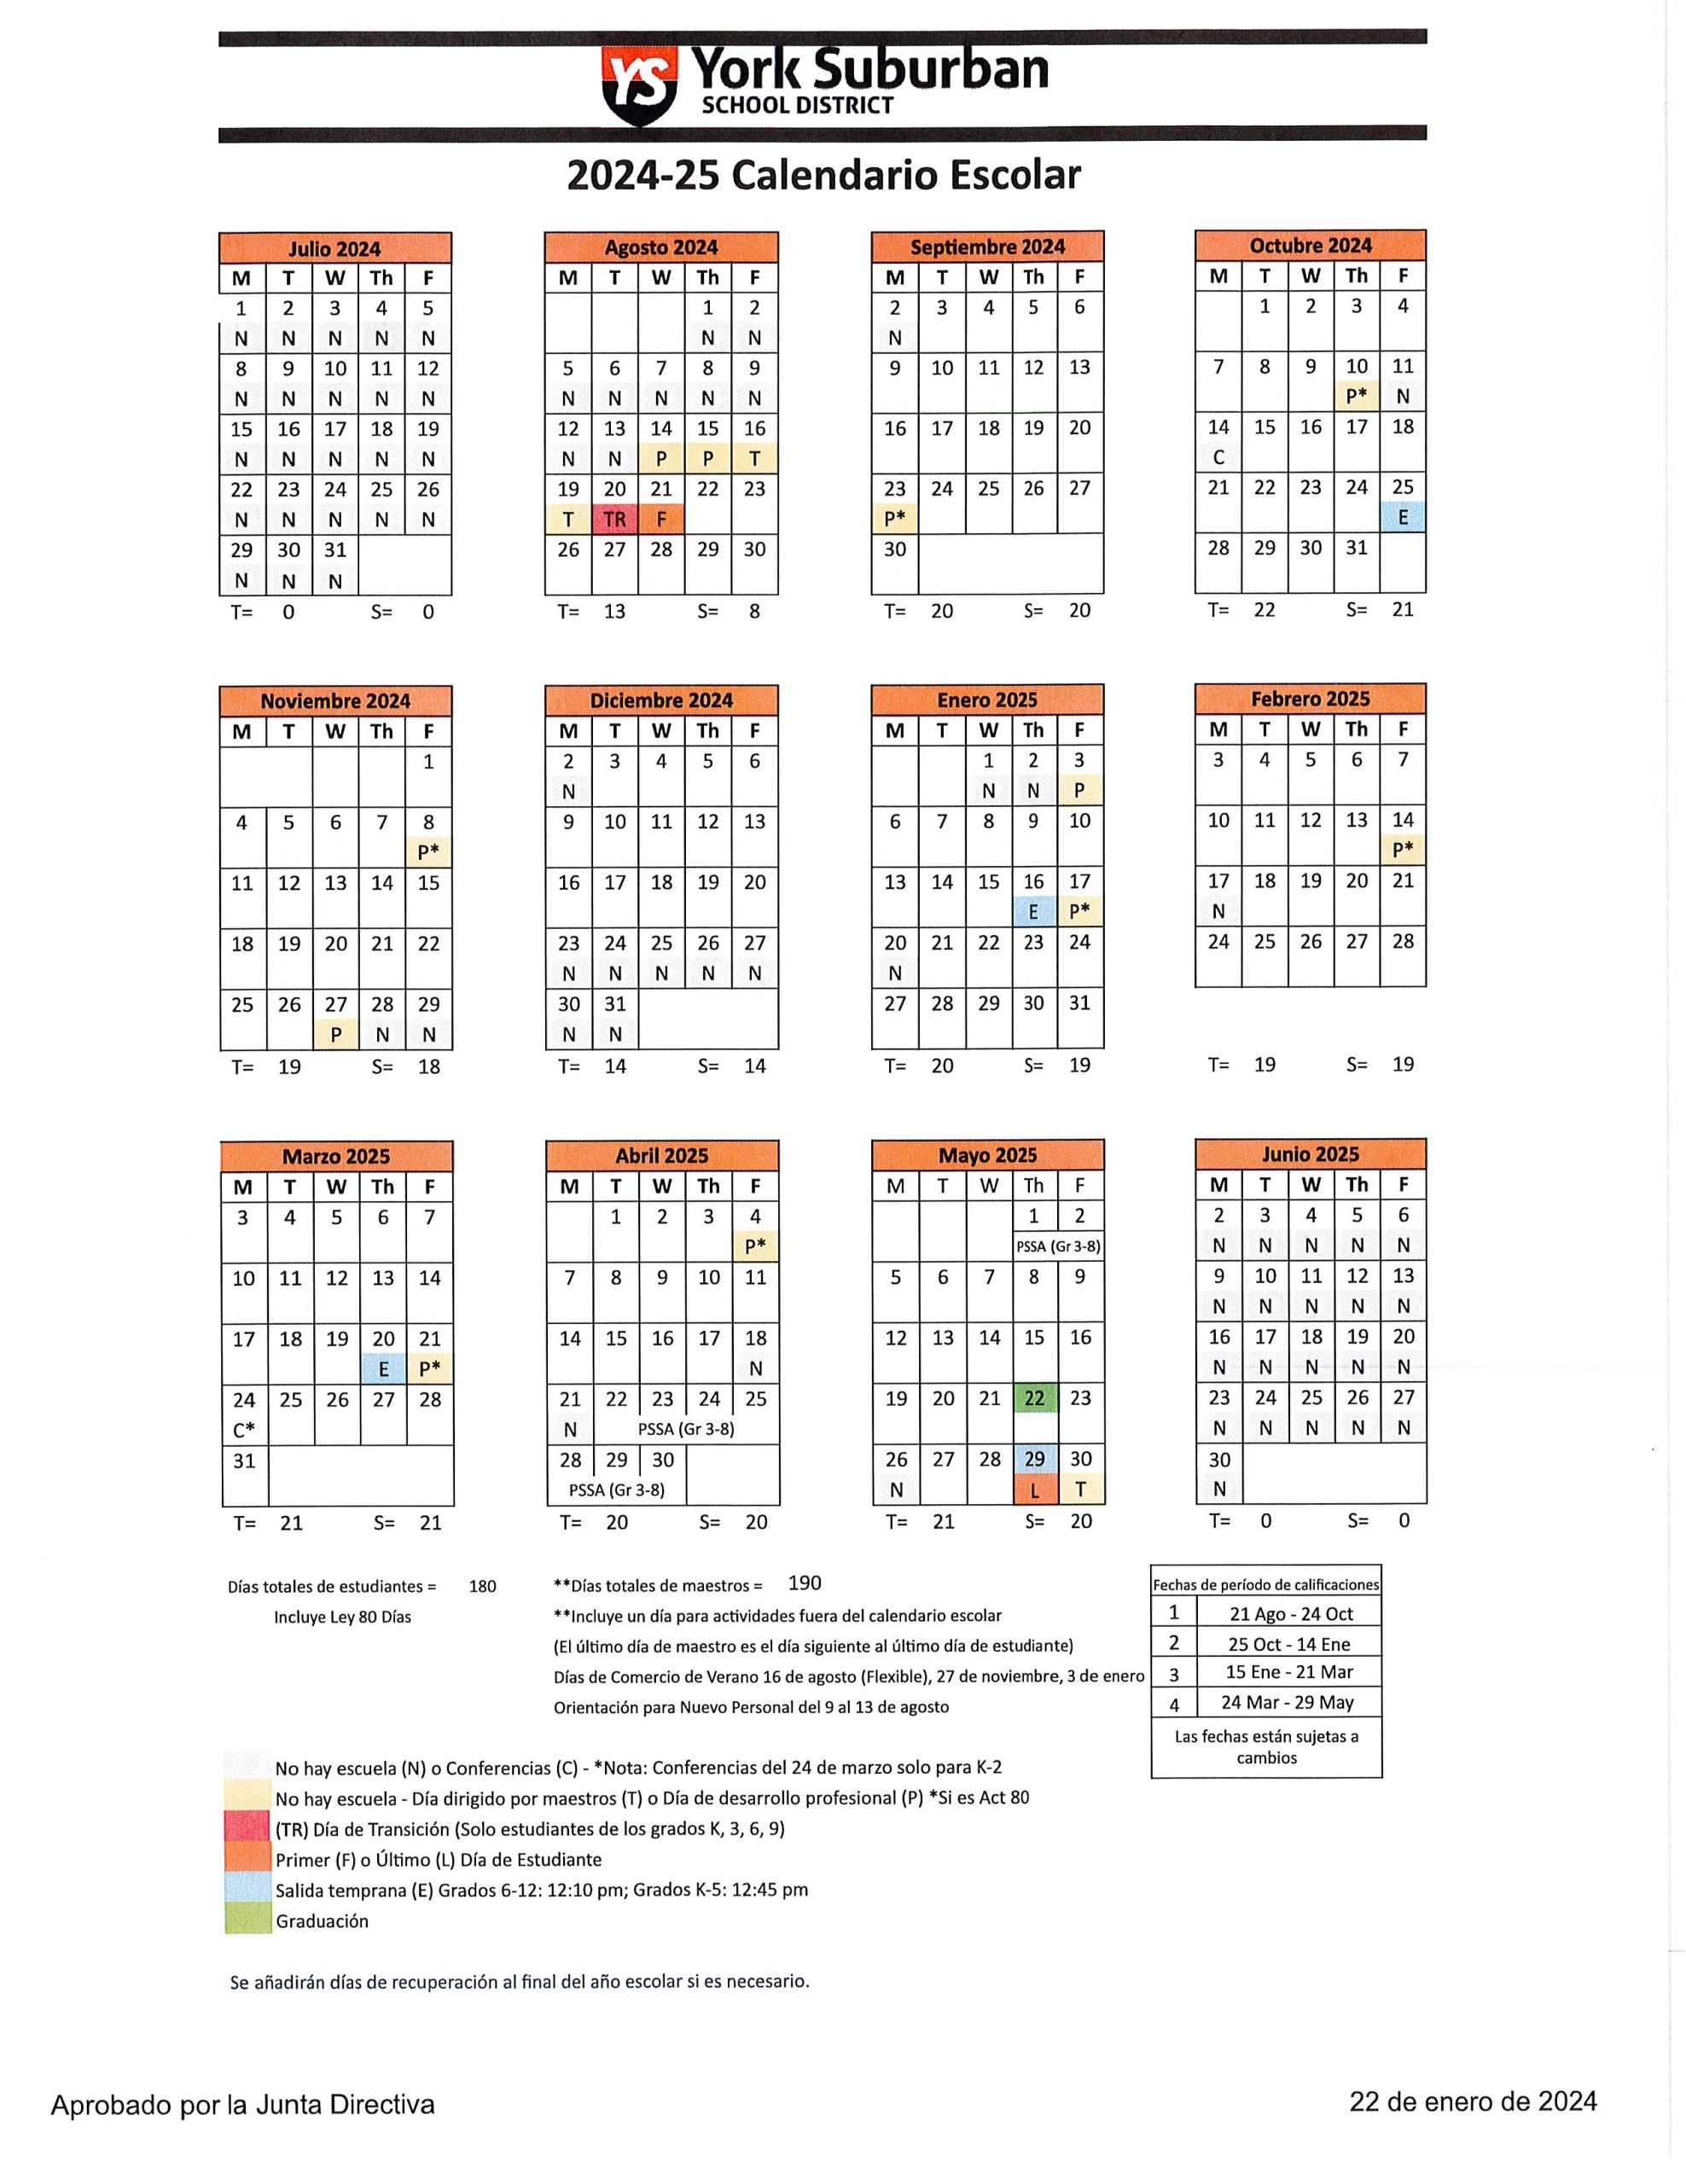 24-25 School Calendar in Spanish